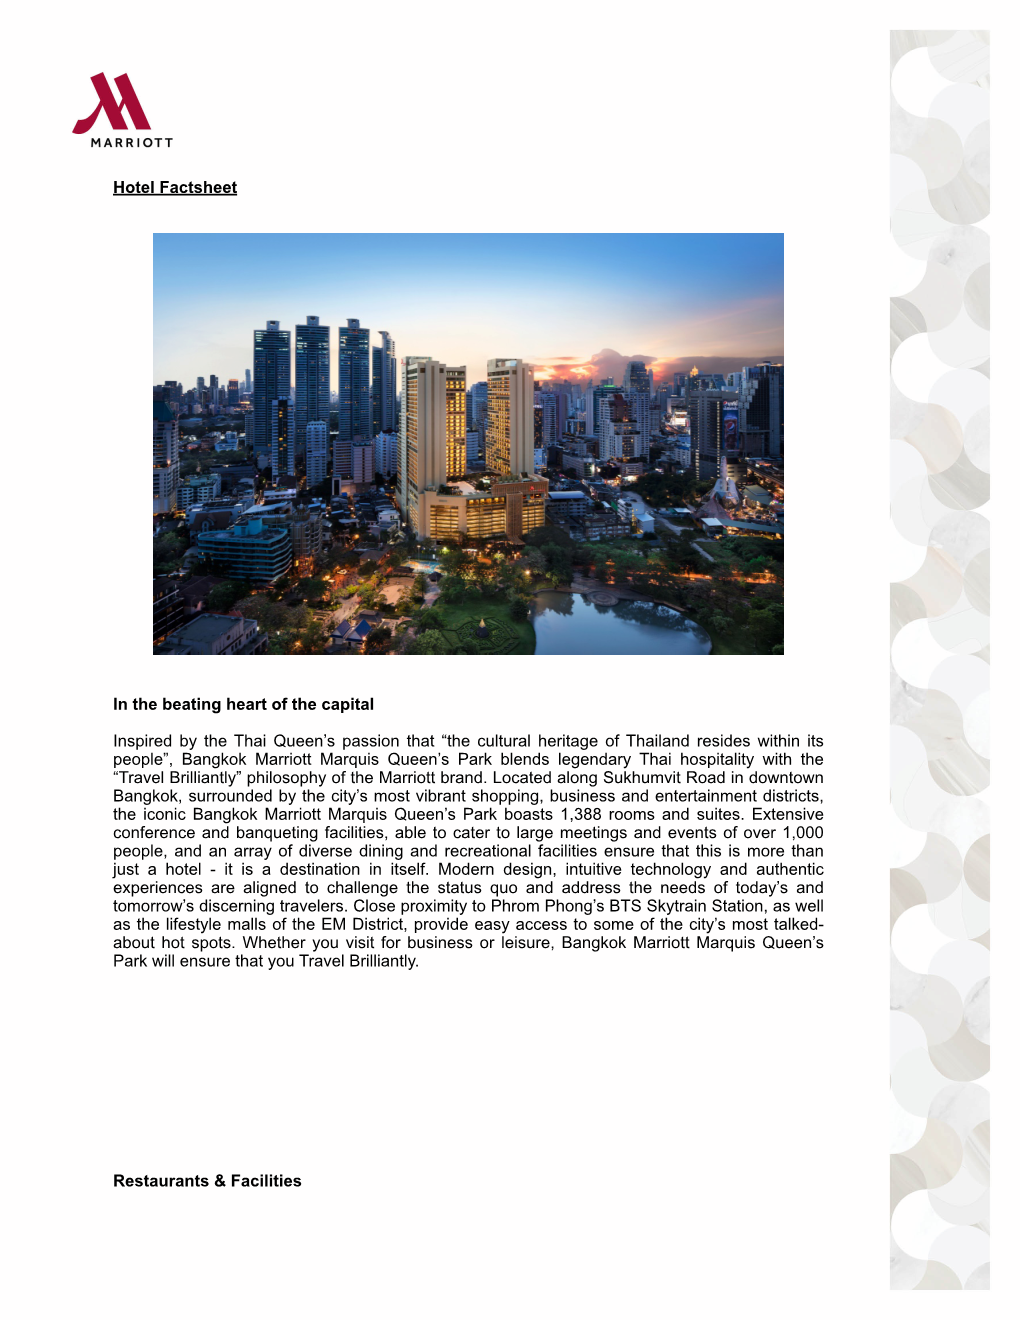 Bangkok Marriott Marquis Queens Park Fact Sheet